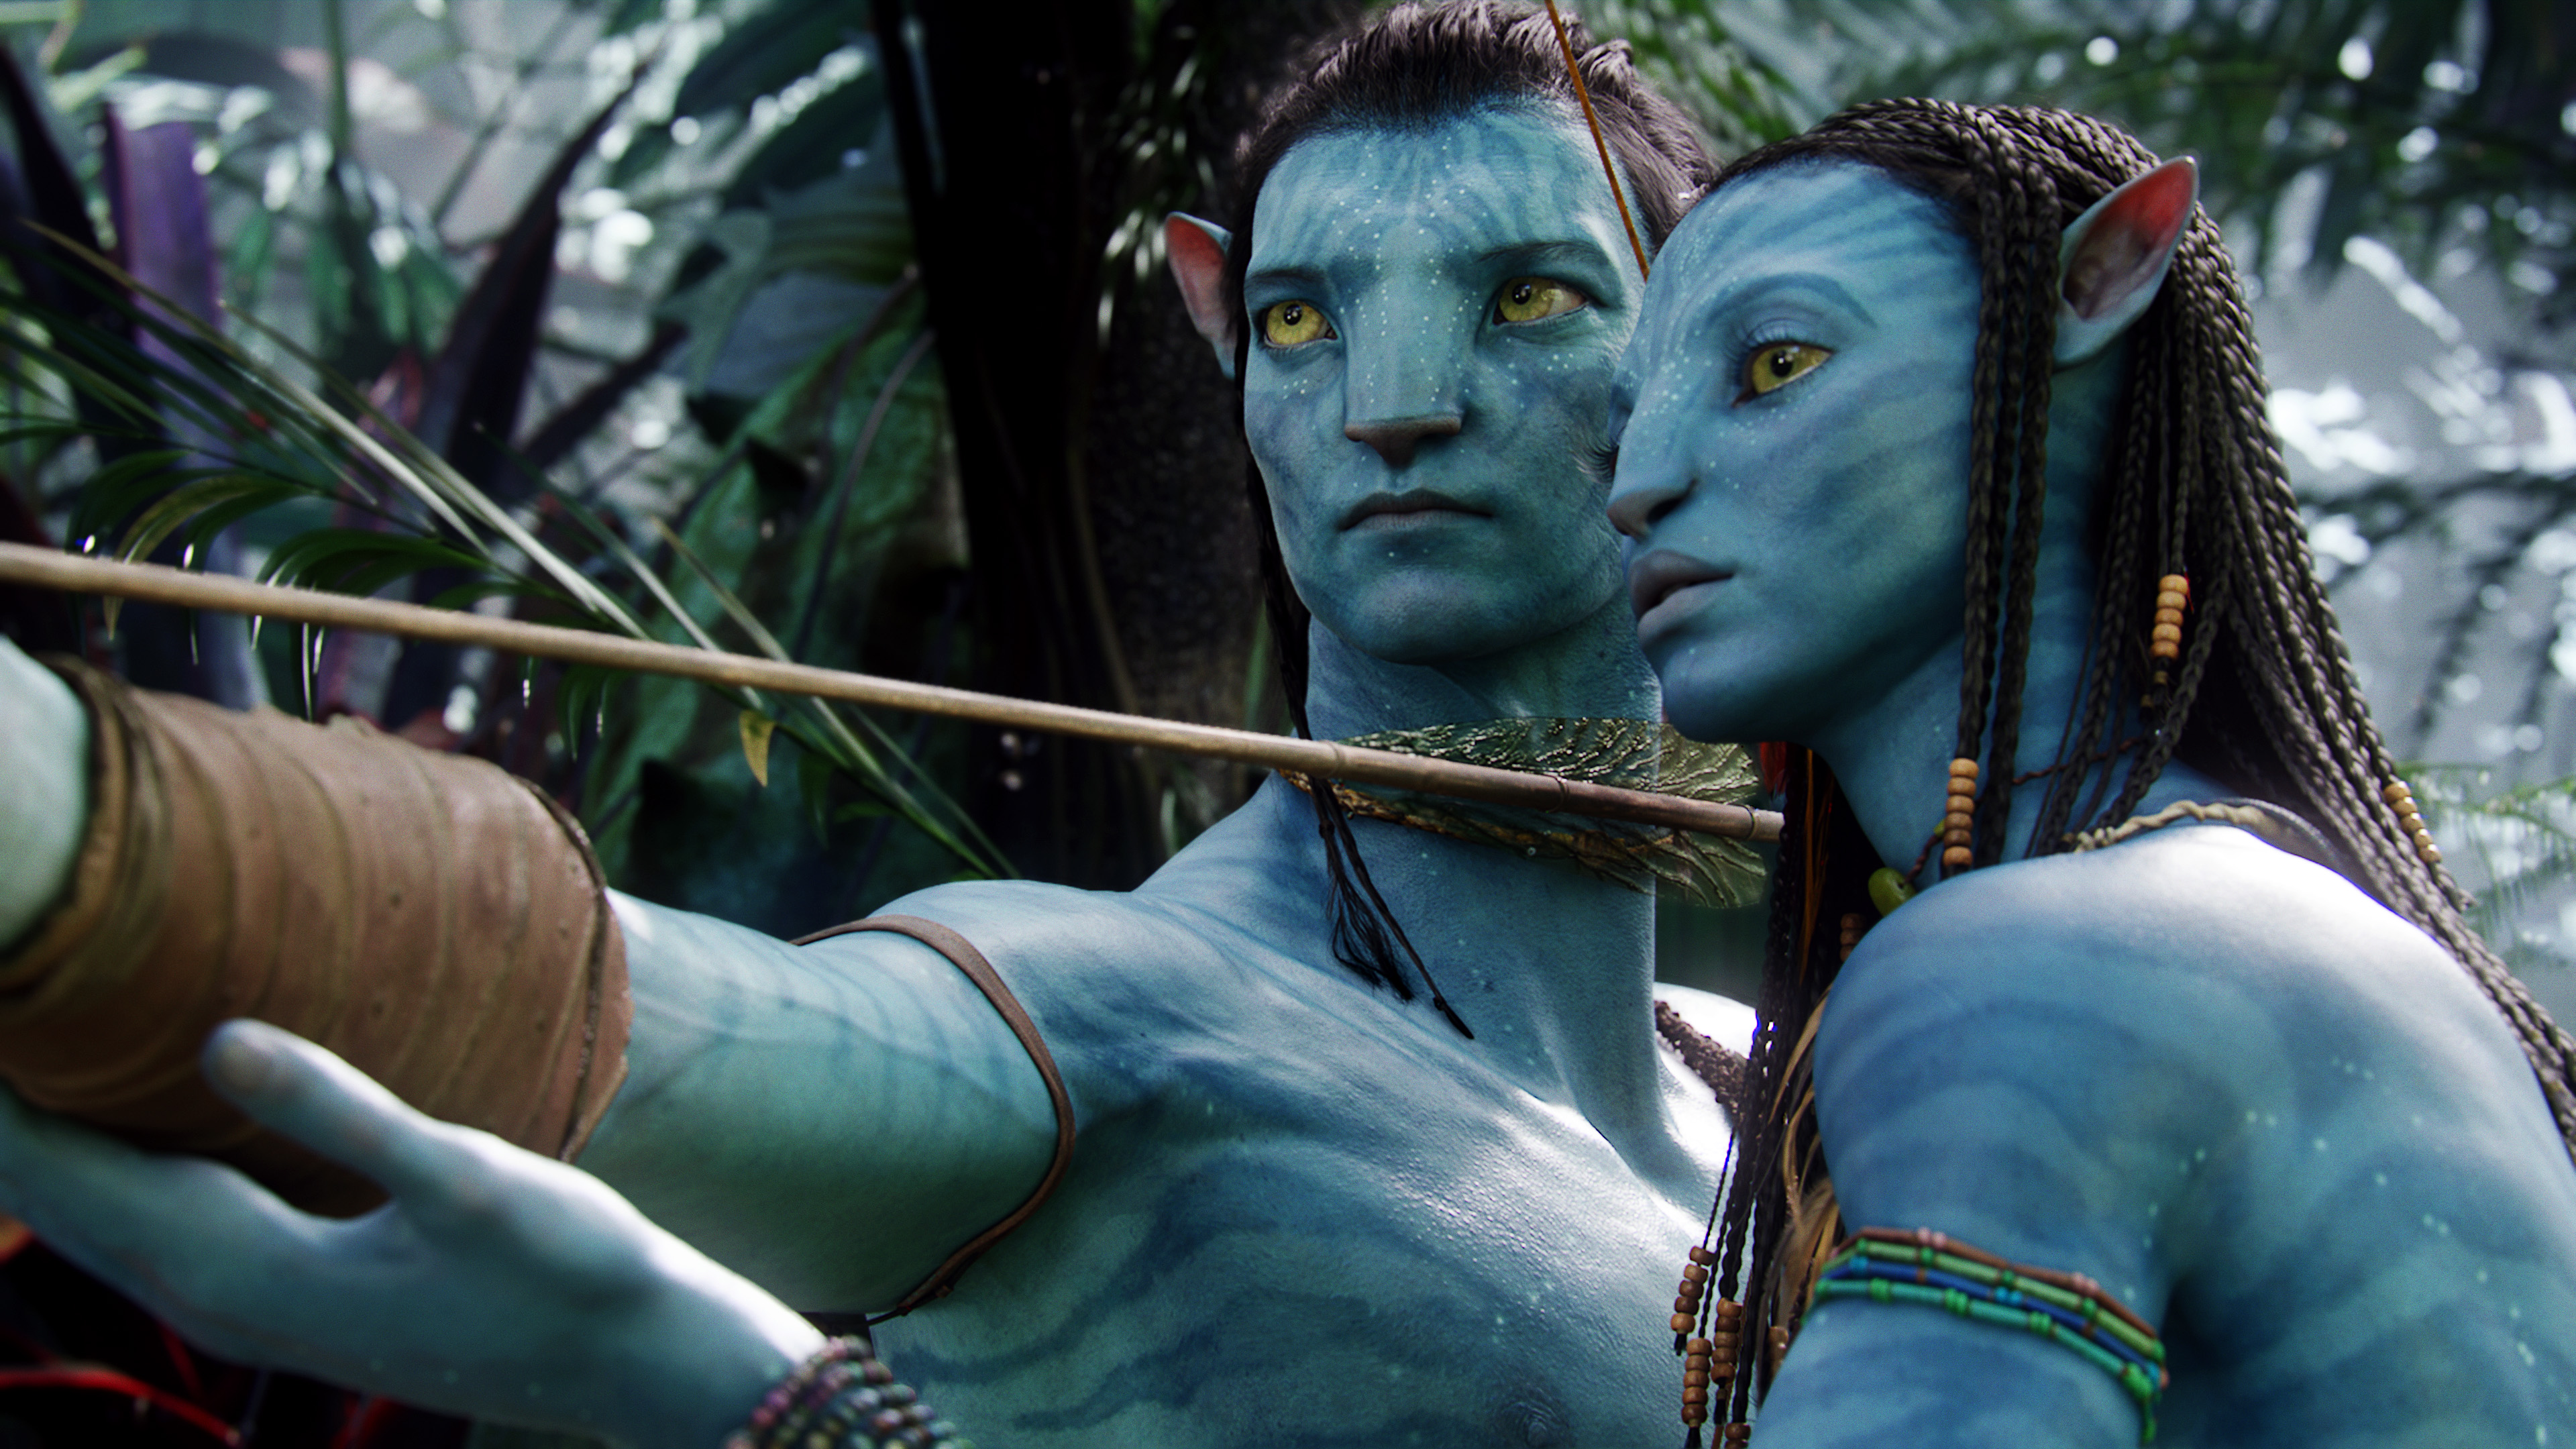 gia đình Avatar: Được bao phủ bởi cây cối và những sinh vật sống động, gia đình Avatar chắc chắn sẽ mang lại cho bạn một trải nghiệm đáng nhớ. Với những hình ảnh tuyệt đẹp và cốt truyện đầy tính nhân văn, bộ phim sẽ giúp bạn hiểu rõ hơn về nghĩa của gia đình và tình yêu thân thiết. Hãy cùng theo dõi và cảm nhận rõ ràng nhất những giá trị và thông điệp của gia đình Avatar trong năm 2024 này.